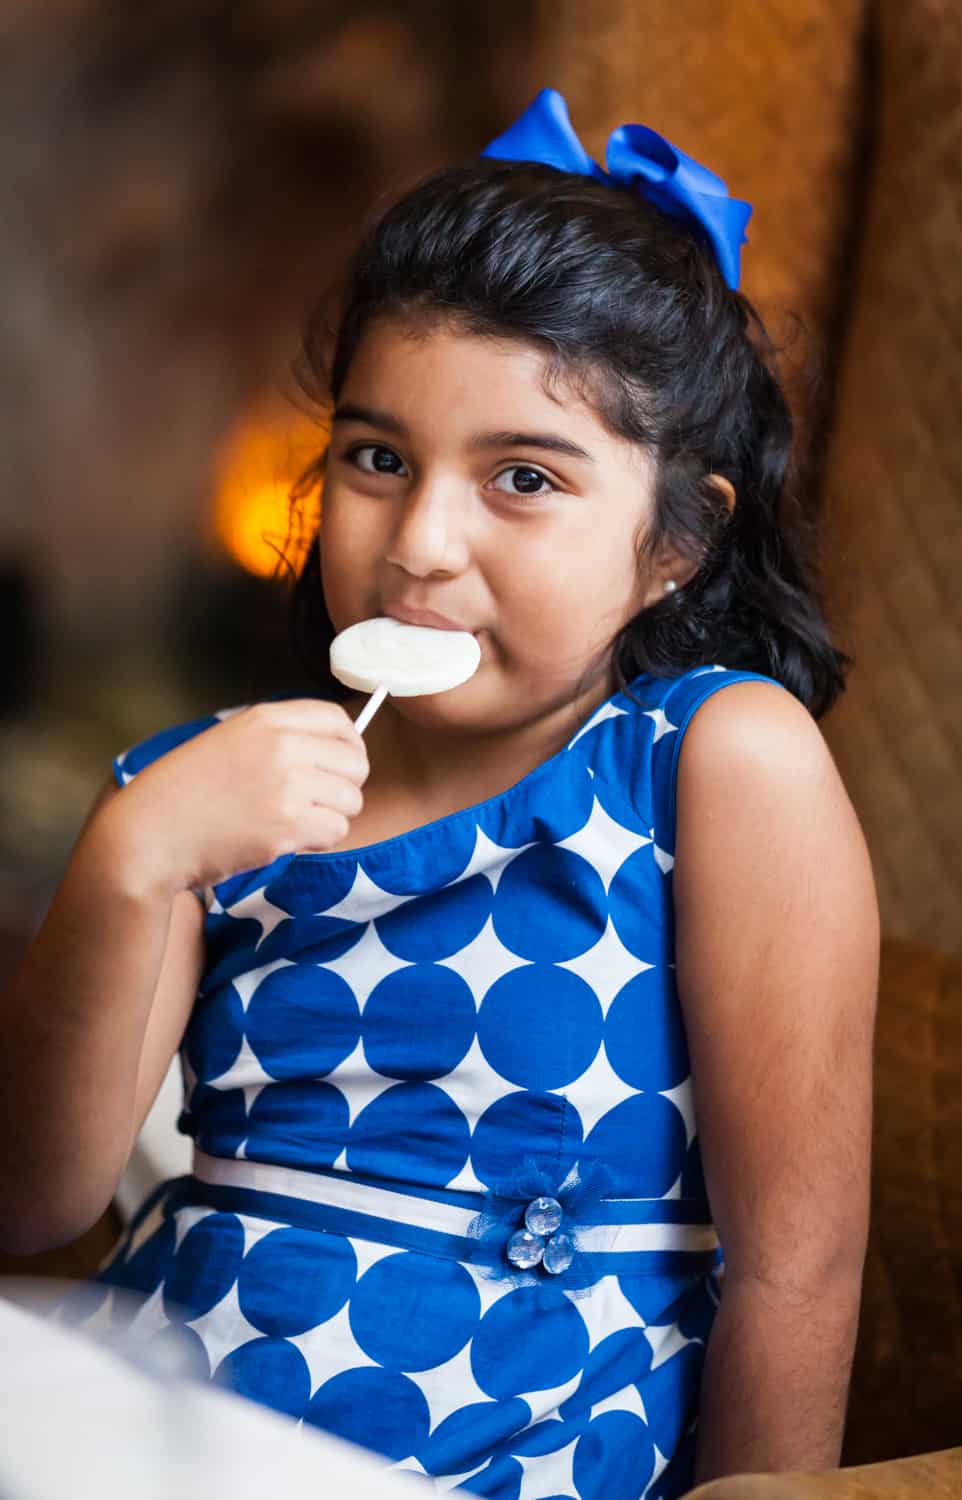 Little girl eating lollipop